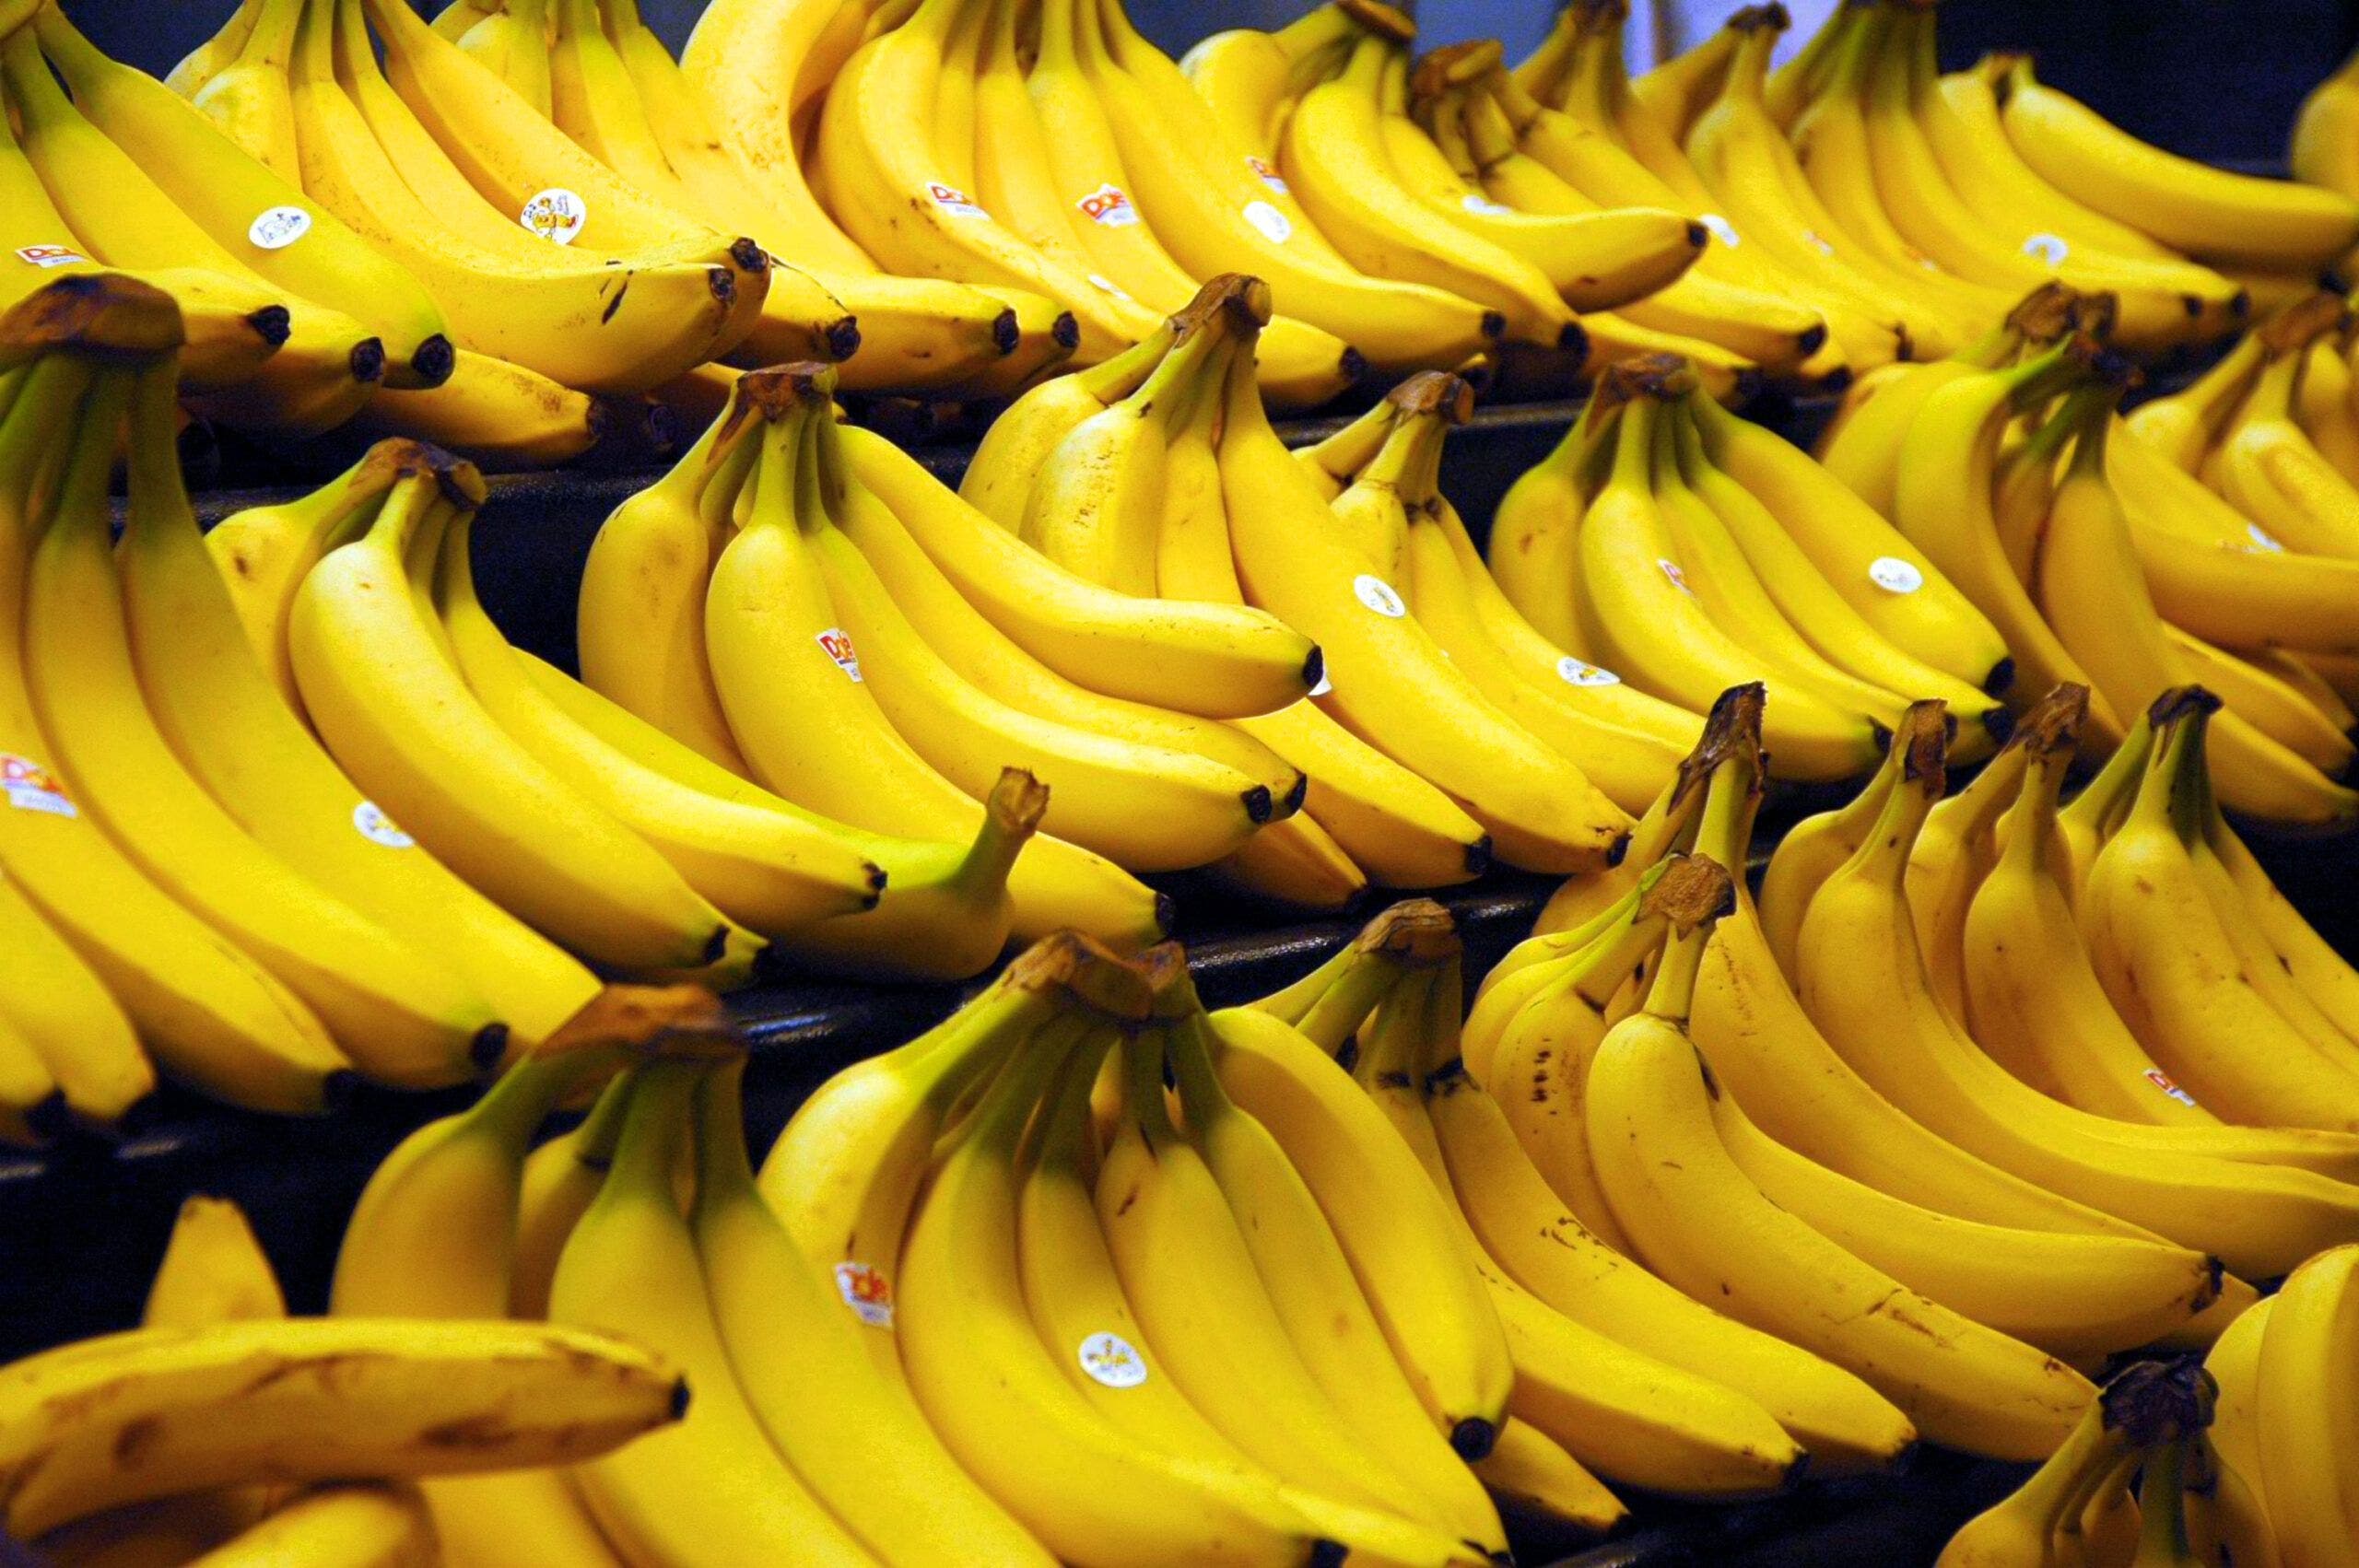 Comer banana es simple, producirla es muy complejo